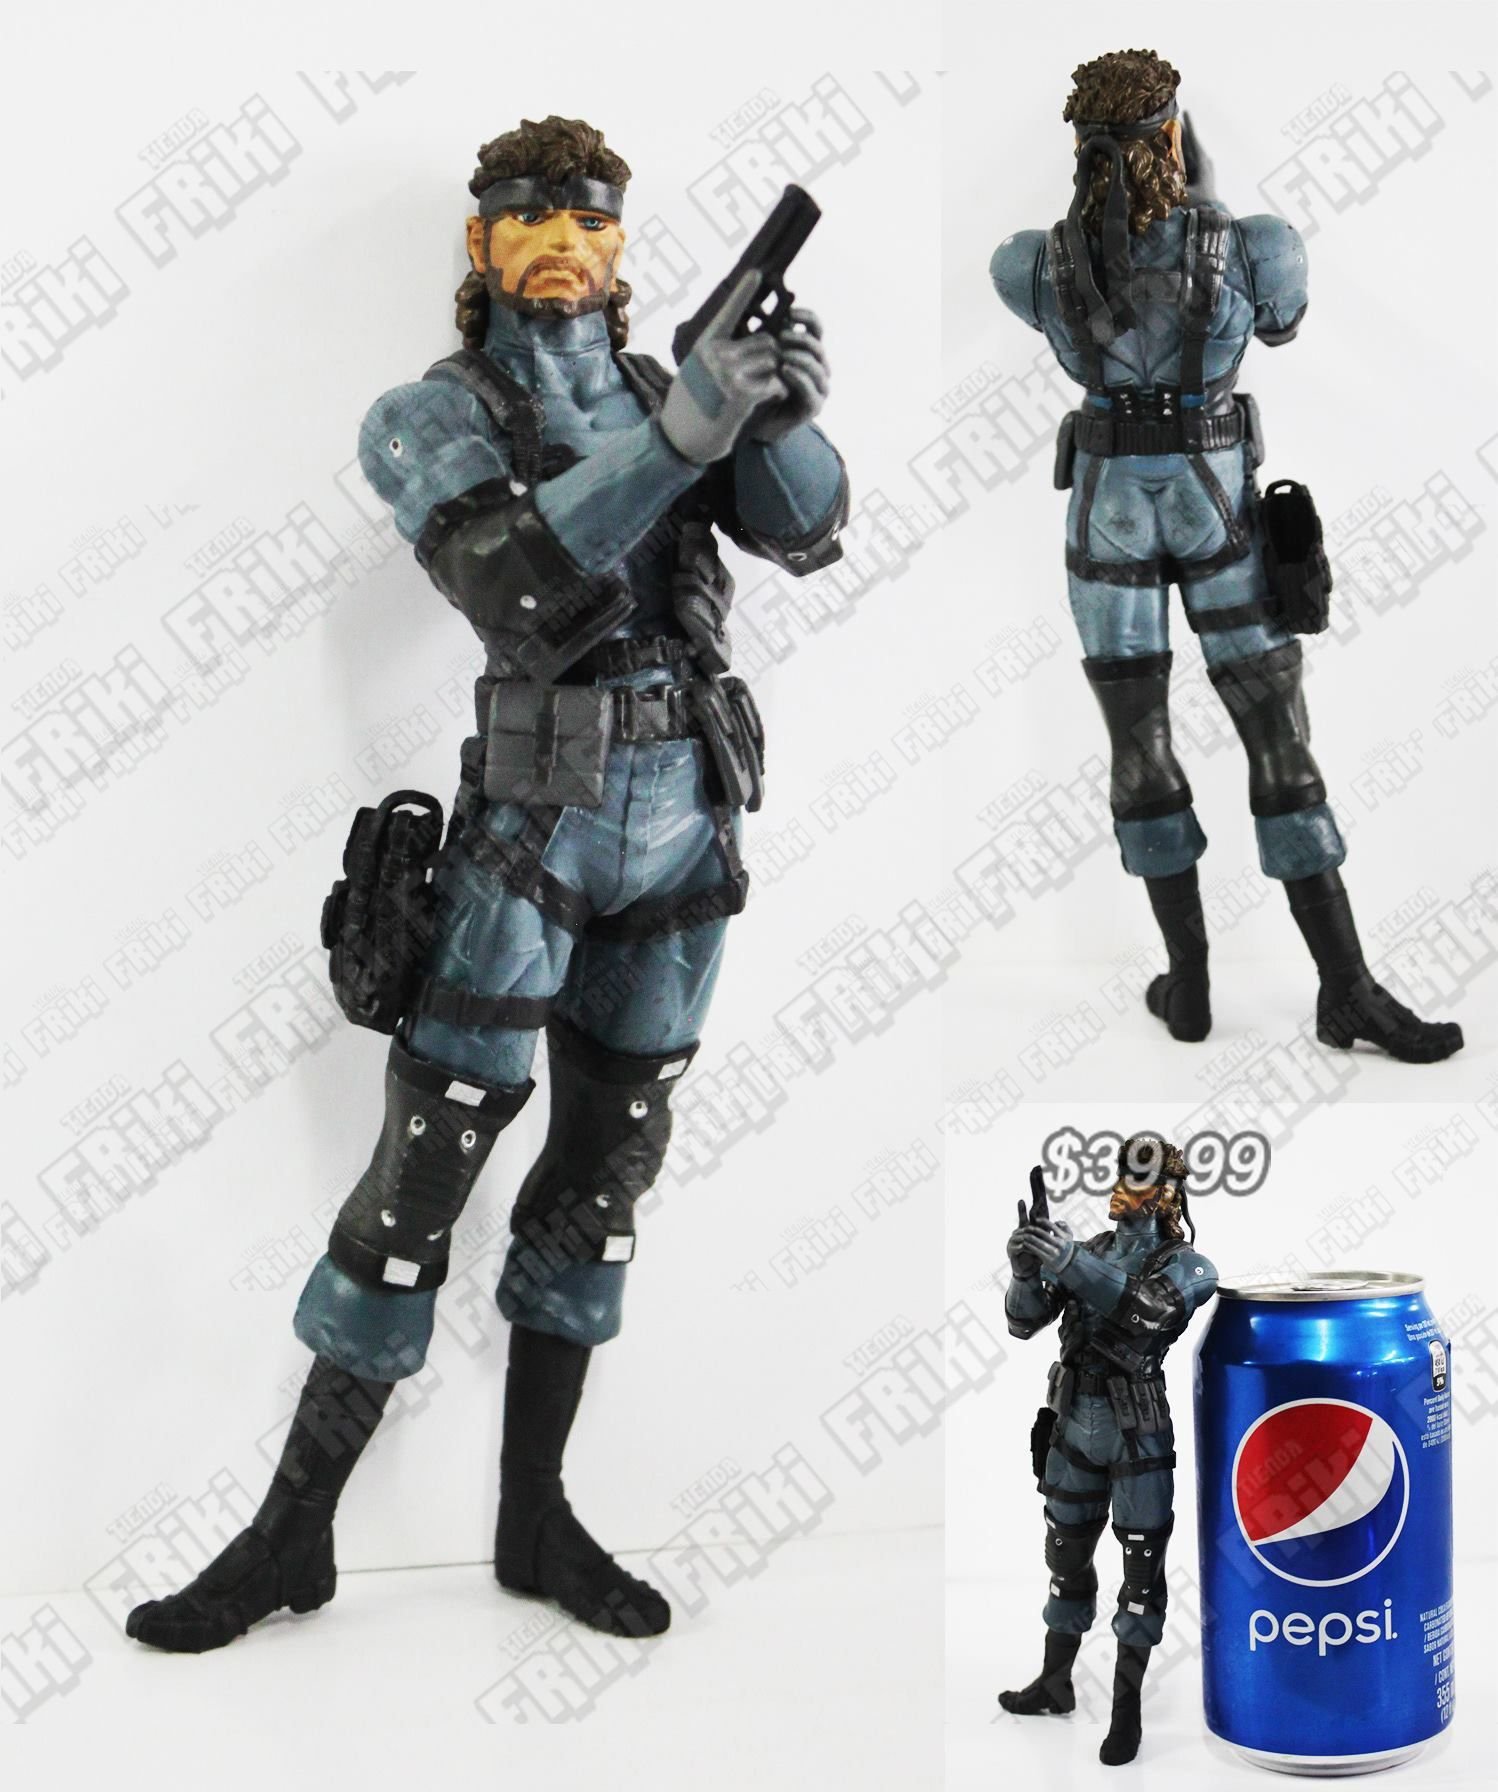 Figura Videojuego Metal Gear Solid Snake Ecuador Comprar Venden, Bonita Apariencia ideal para los fans, practica, Hermoso material plástico Color como en la imagen Estado nuevo